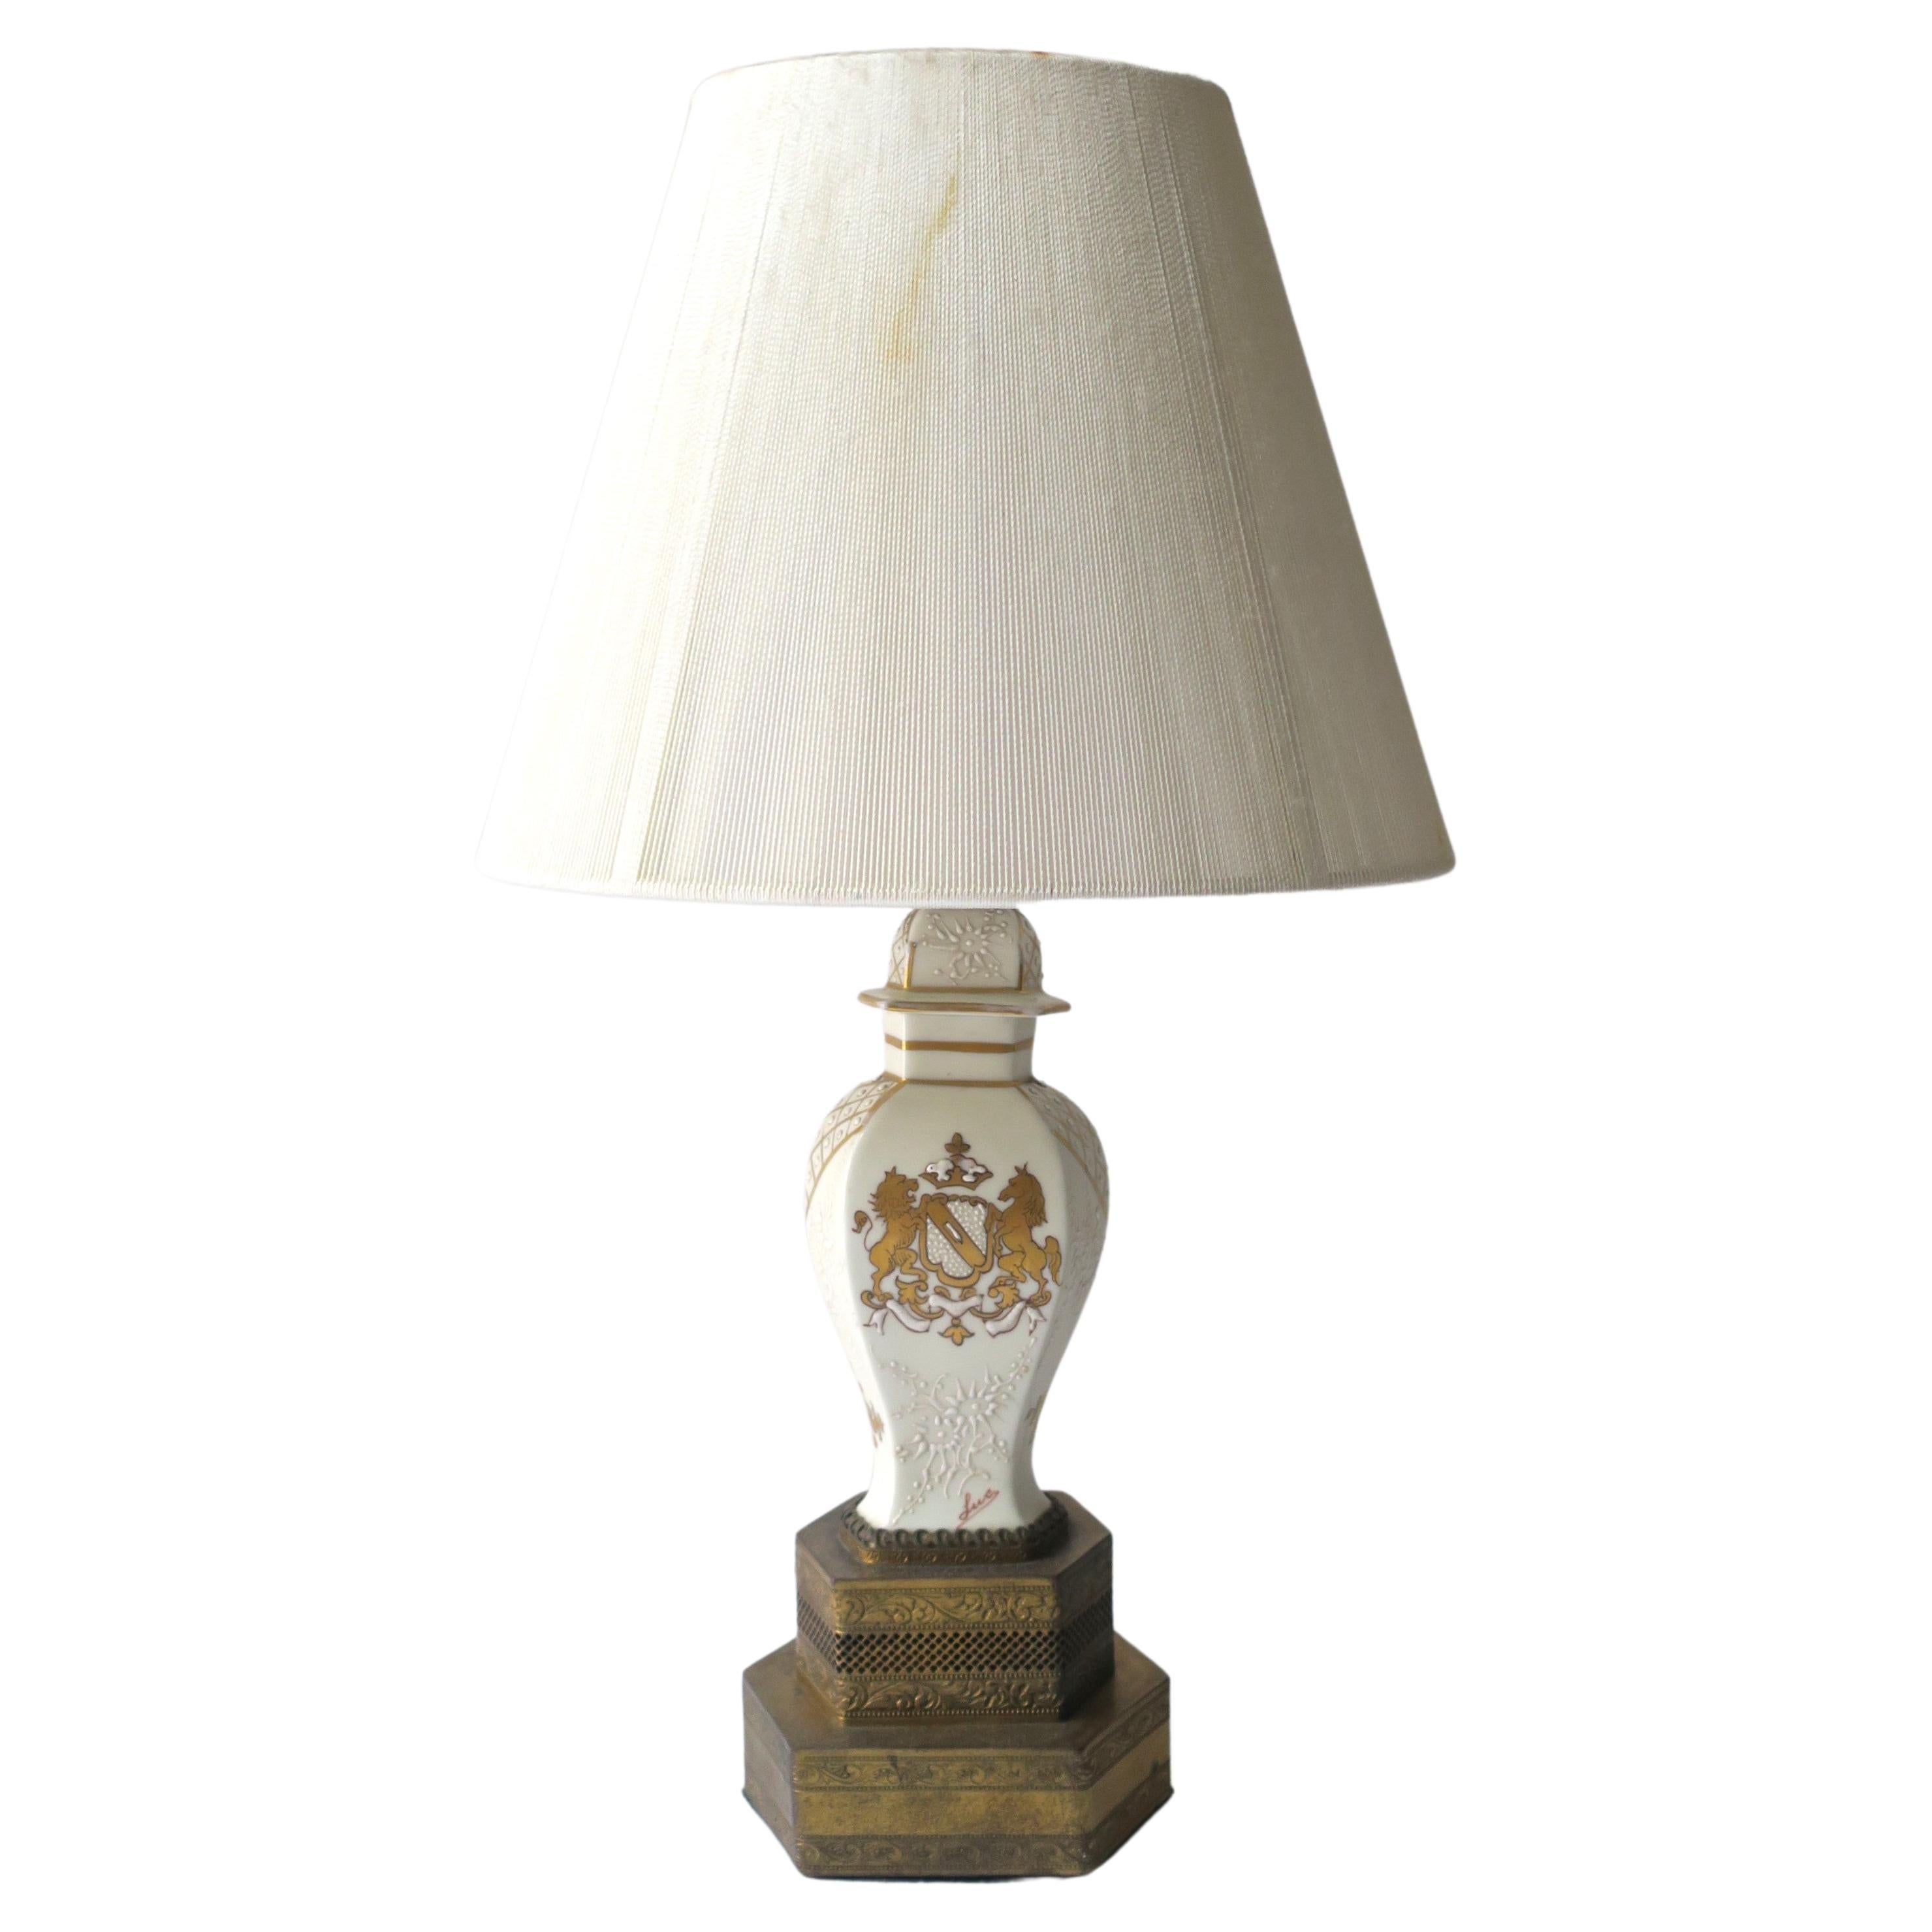 Französische Tischlampe aus Porzellan und Messing mit goldenem Löwenpferd-Design, klein